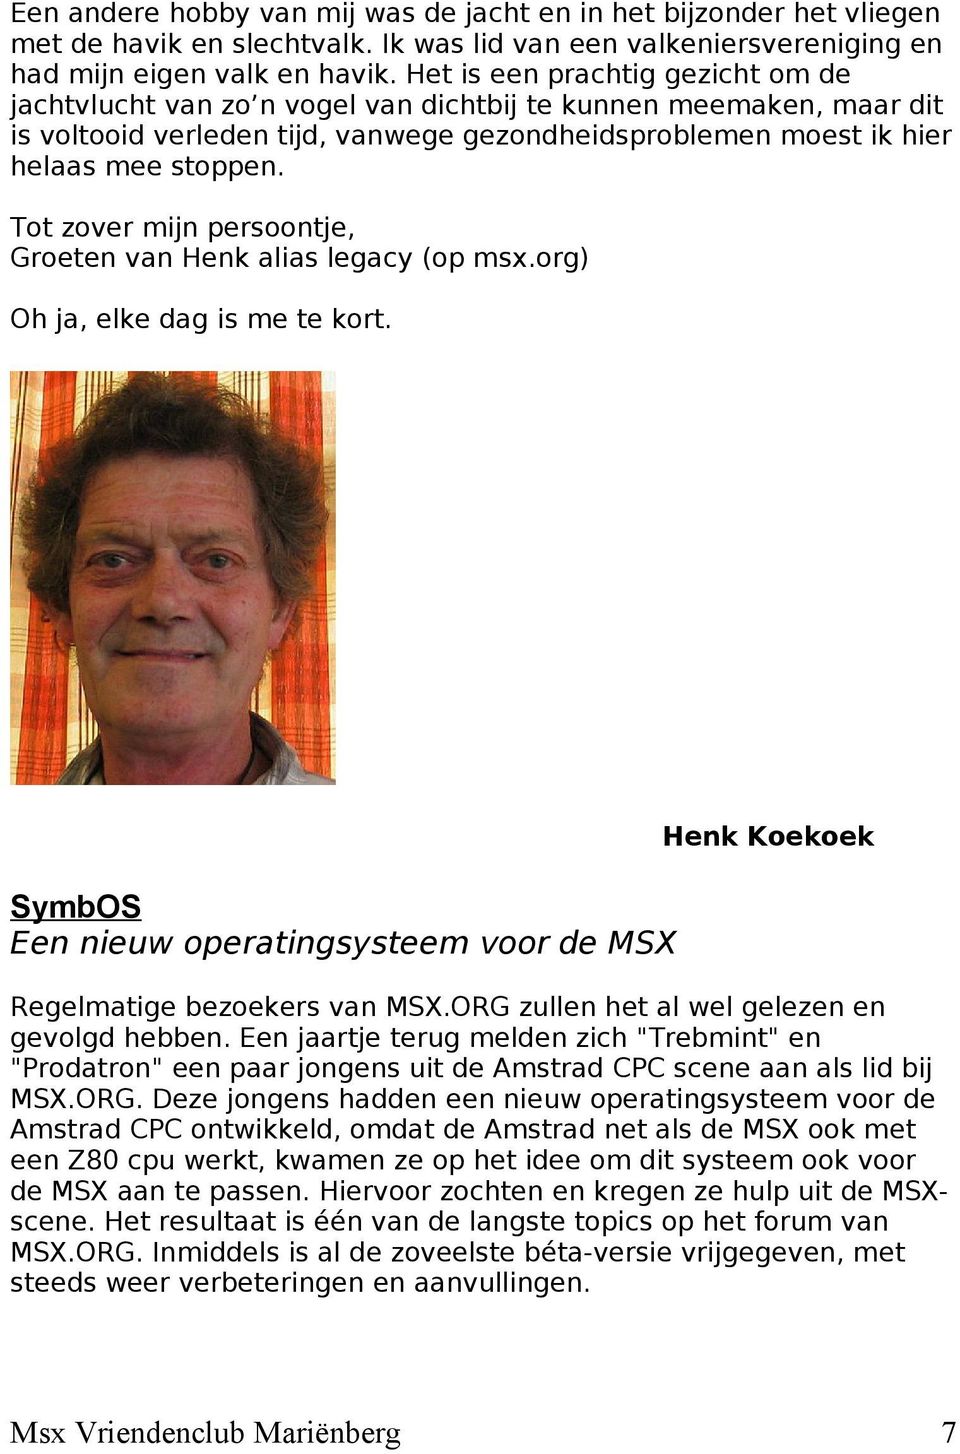 Tot zover mijn persoontje, Groeten van Henk alias legacy (op msx.org) Oh ja, elke dag is me te kort. Henk Koekoek SymbOS Een nieuw operatingsysteem voor de MSX Regelmatige bezoekers van MSX.